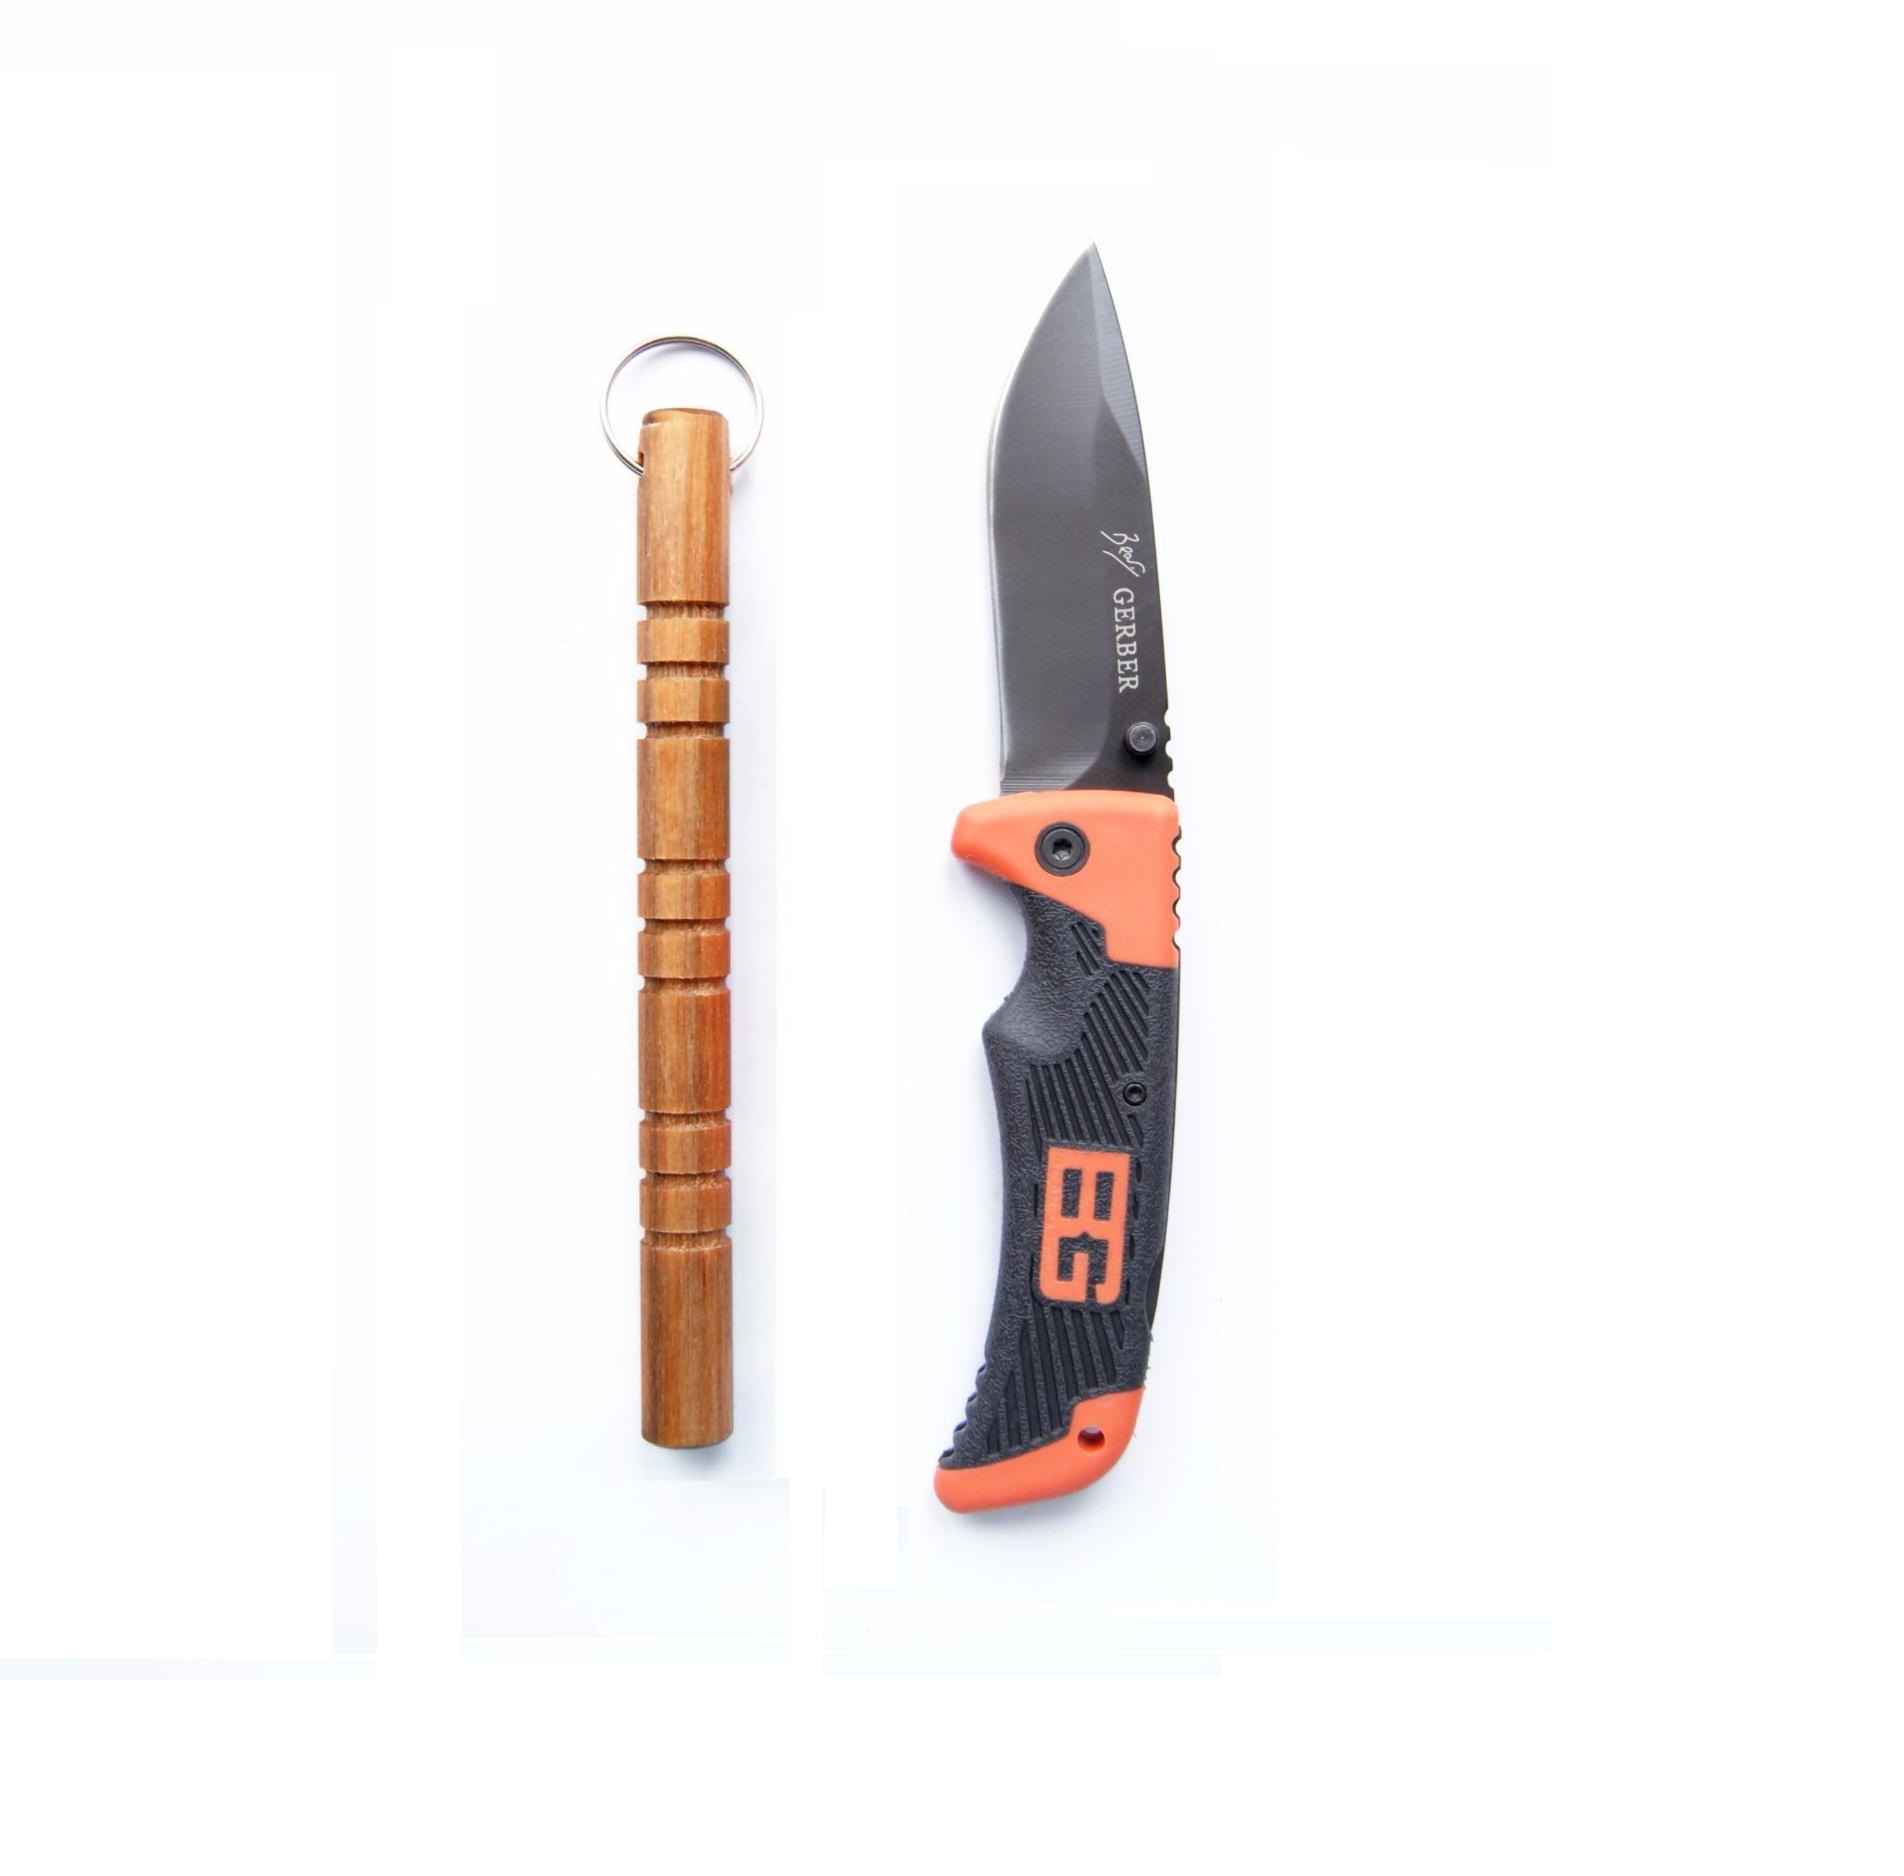 gerber and kubotan knife